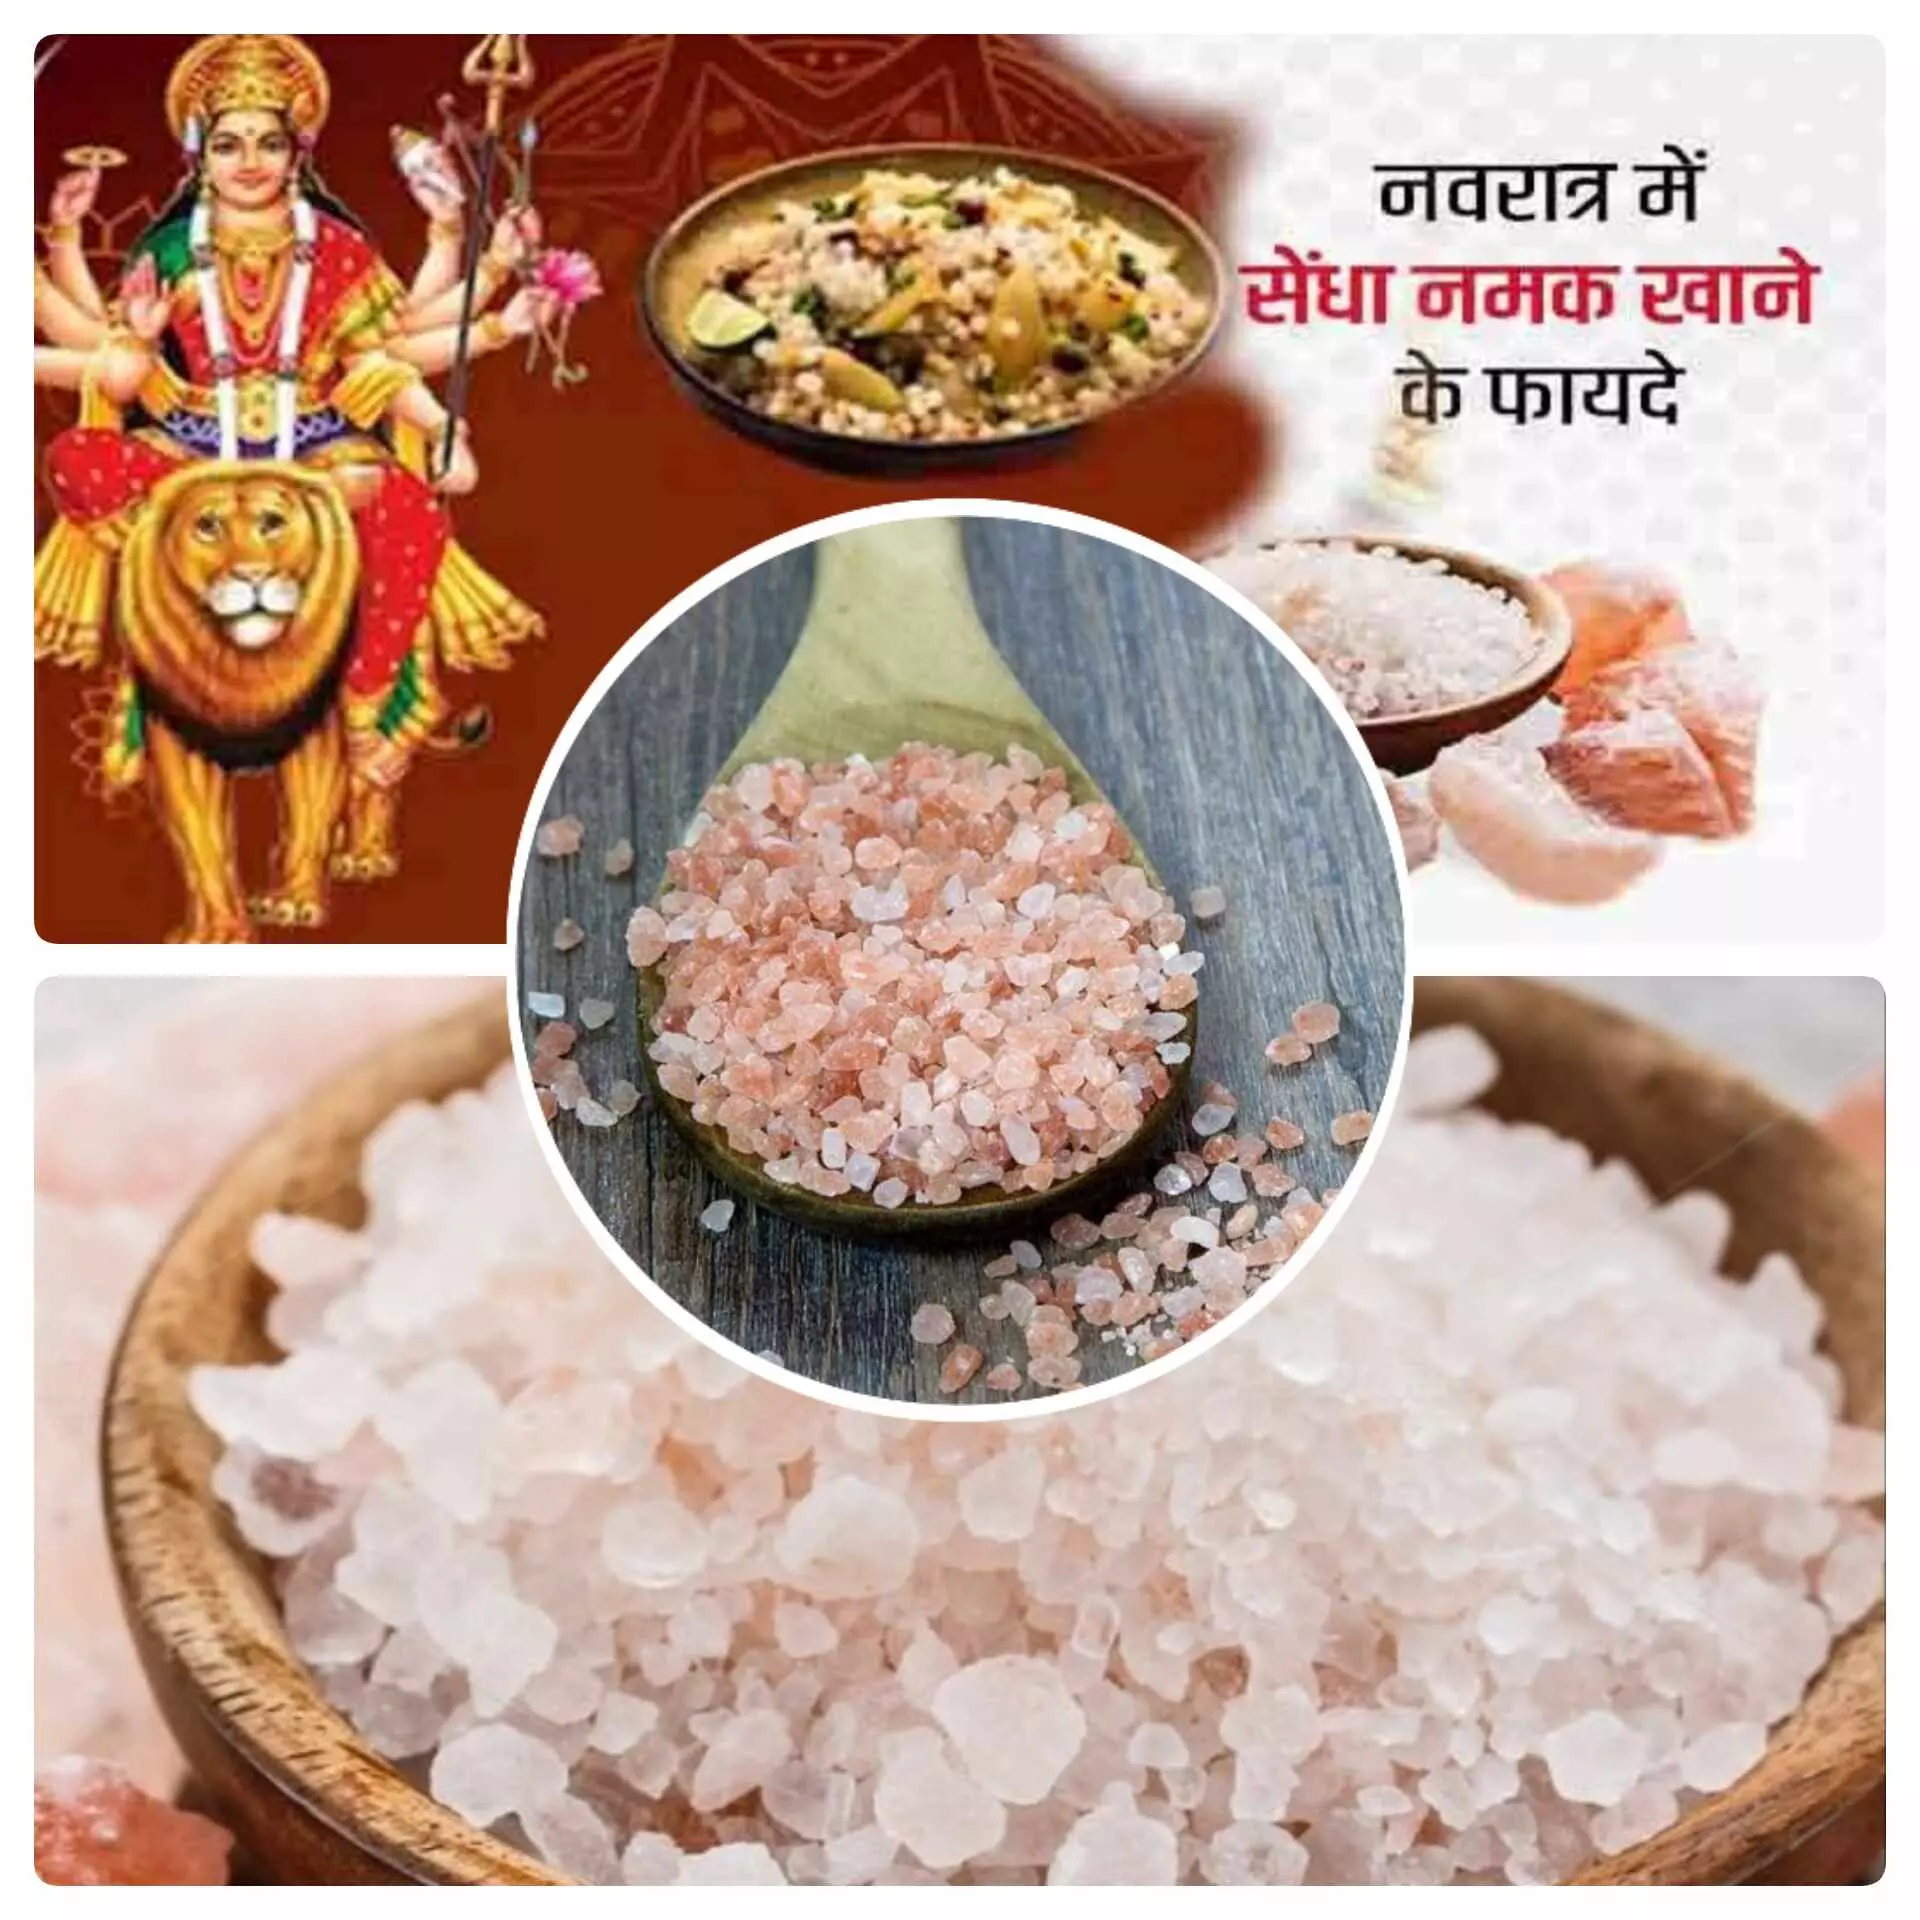 Rock Salt : नवरात्रि के व्रत में क्यों खाते है सेंधा नमक, जानिए इसके फायदे